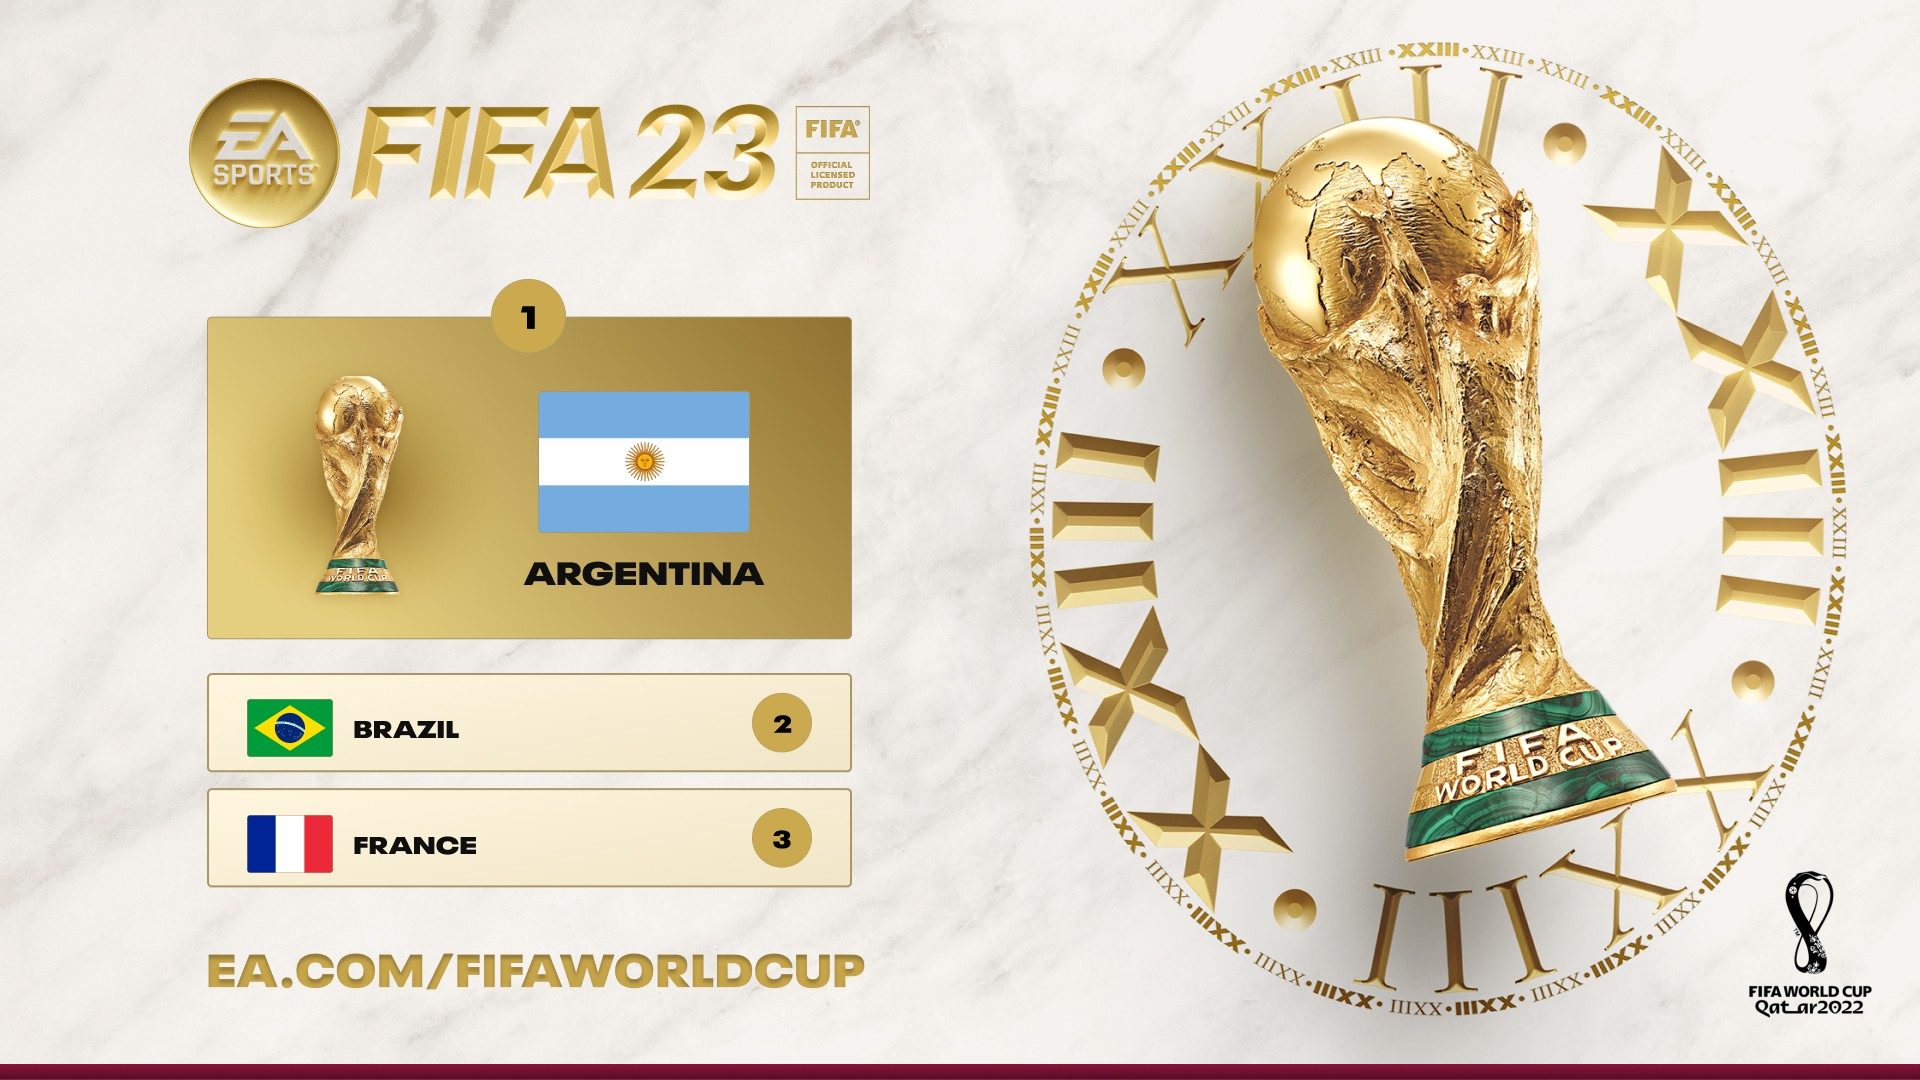 L'Argentine sera le nouveau champion de la Coupe du Monde de la FIFA, selon le simulateur FIFA 23